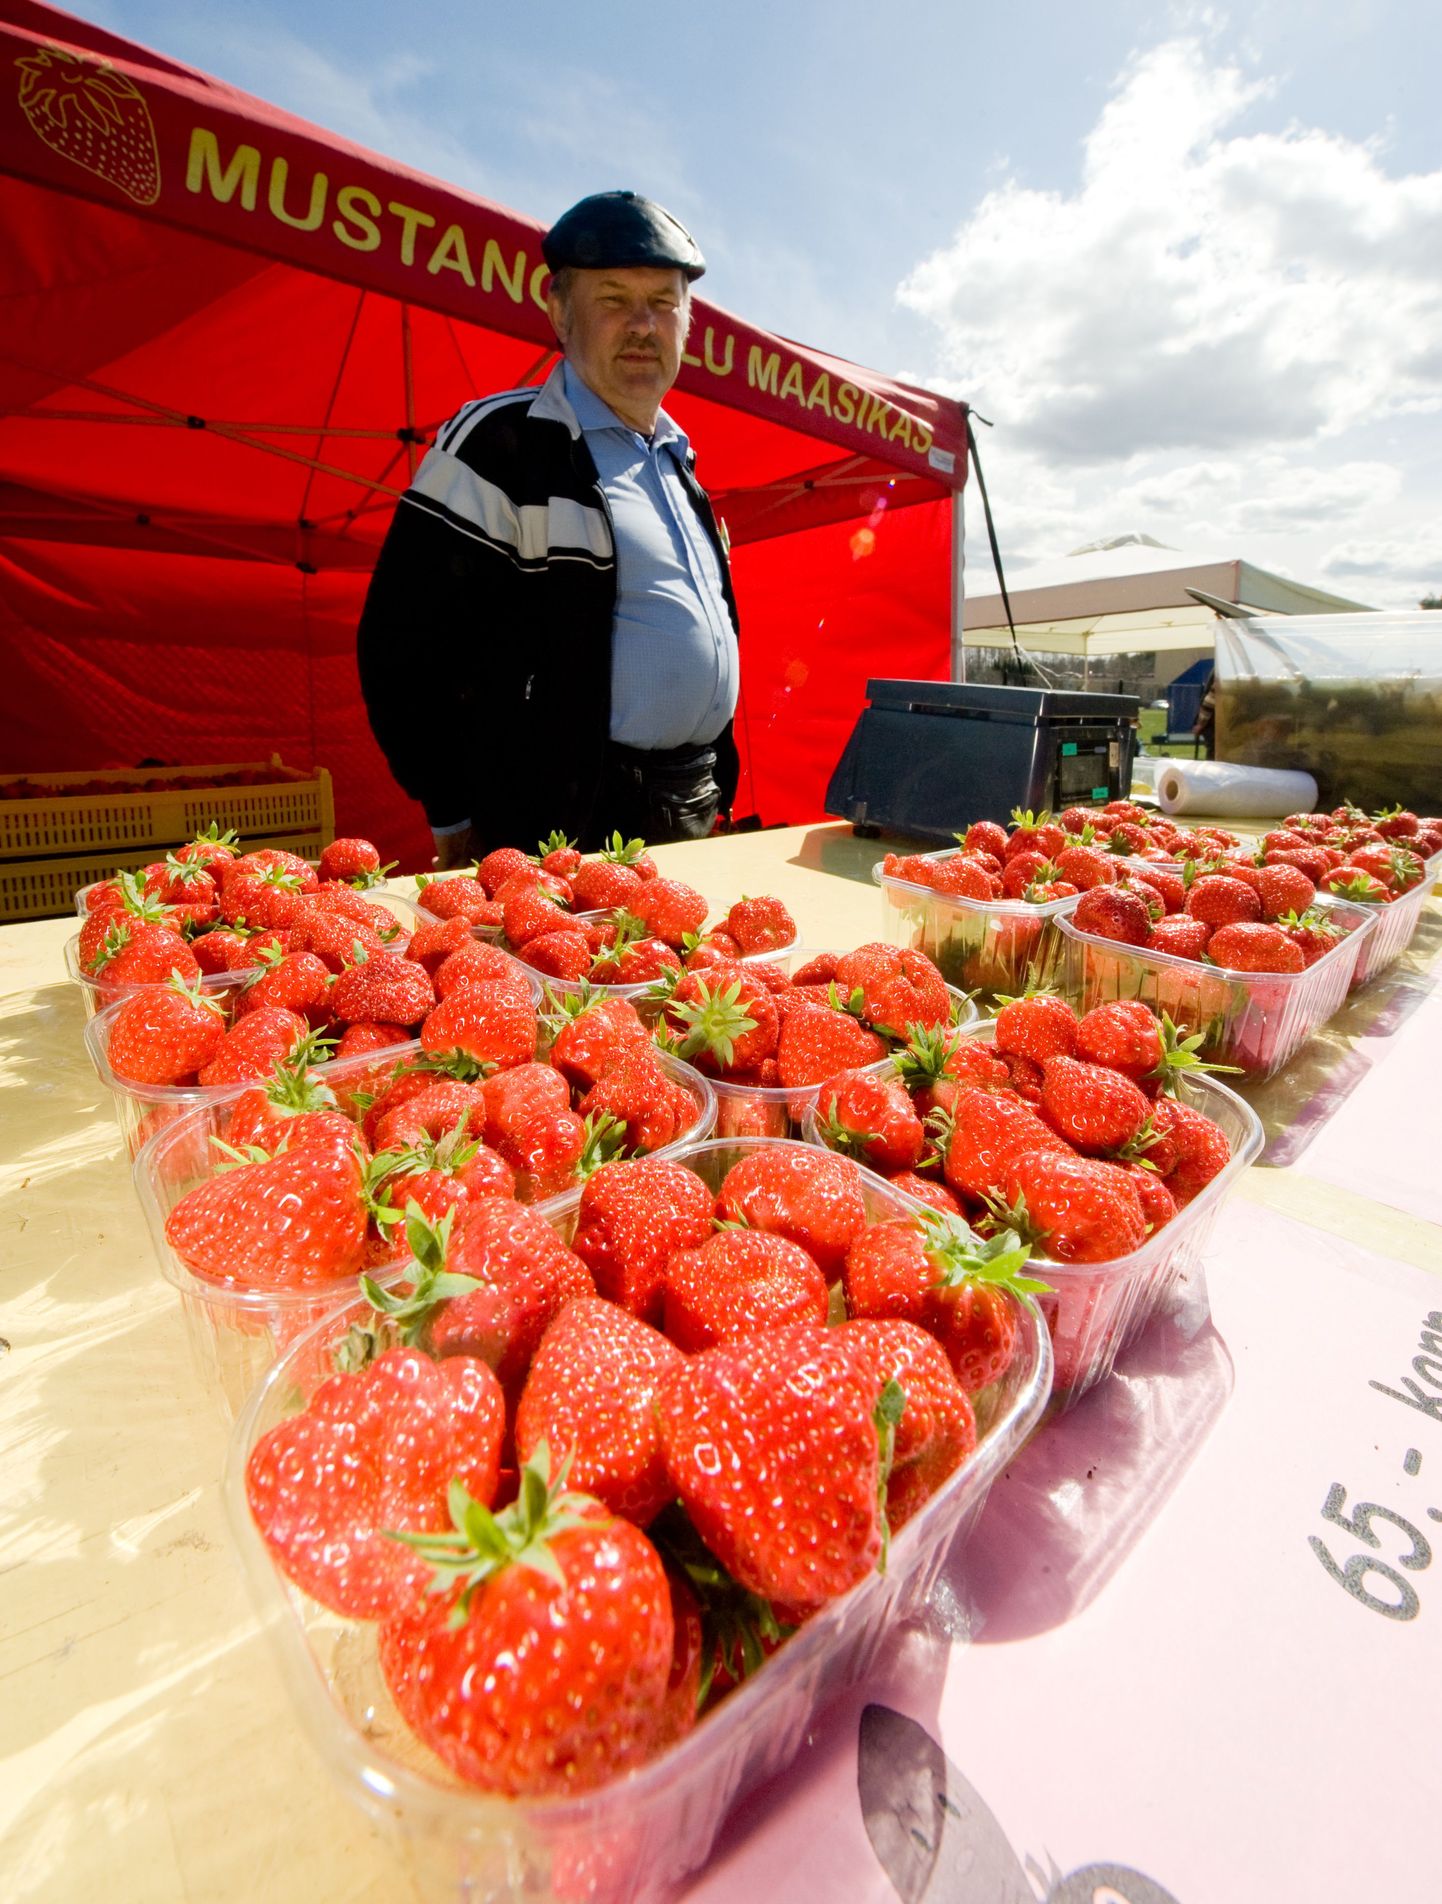 Mustangi talu maasikamüüja Aarne Musting.